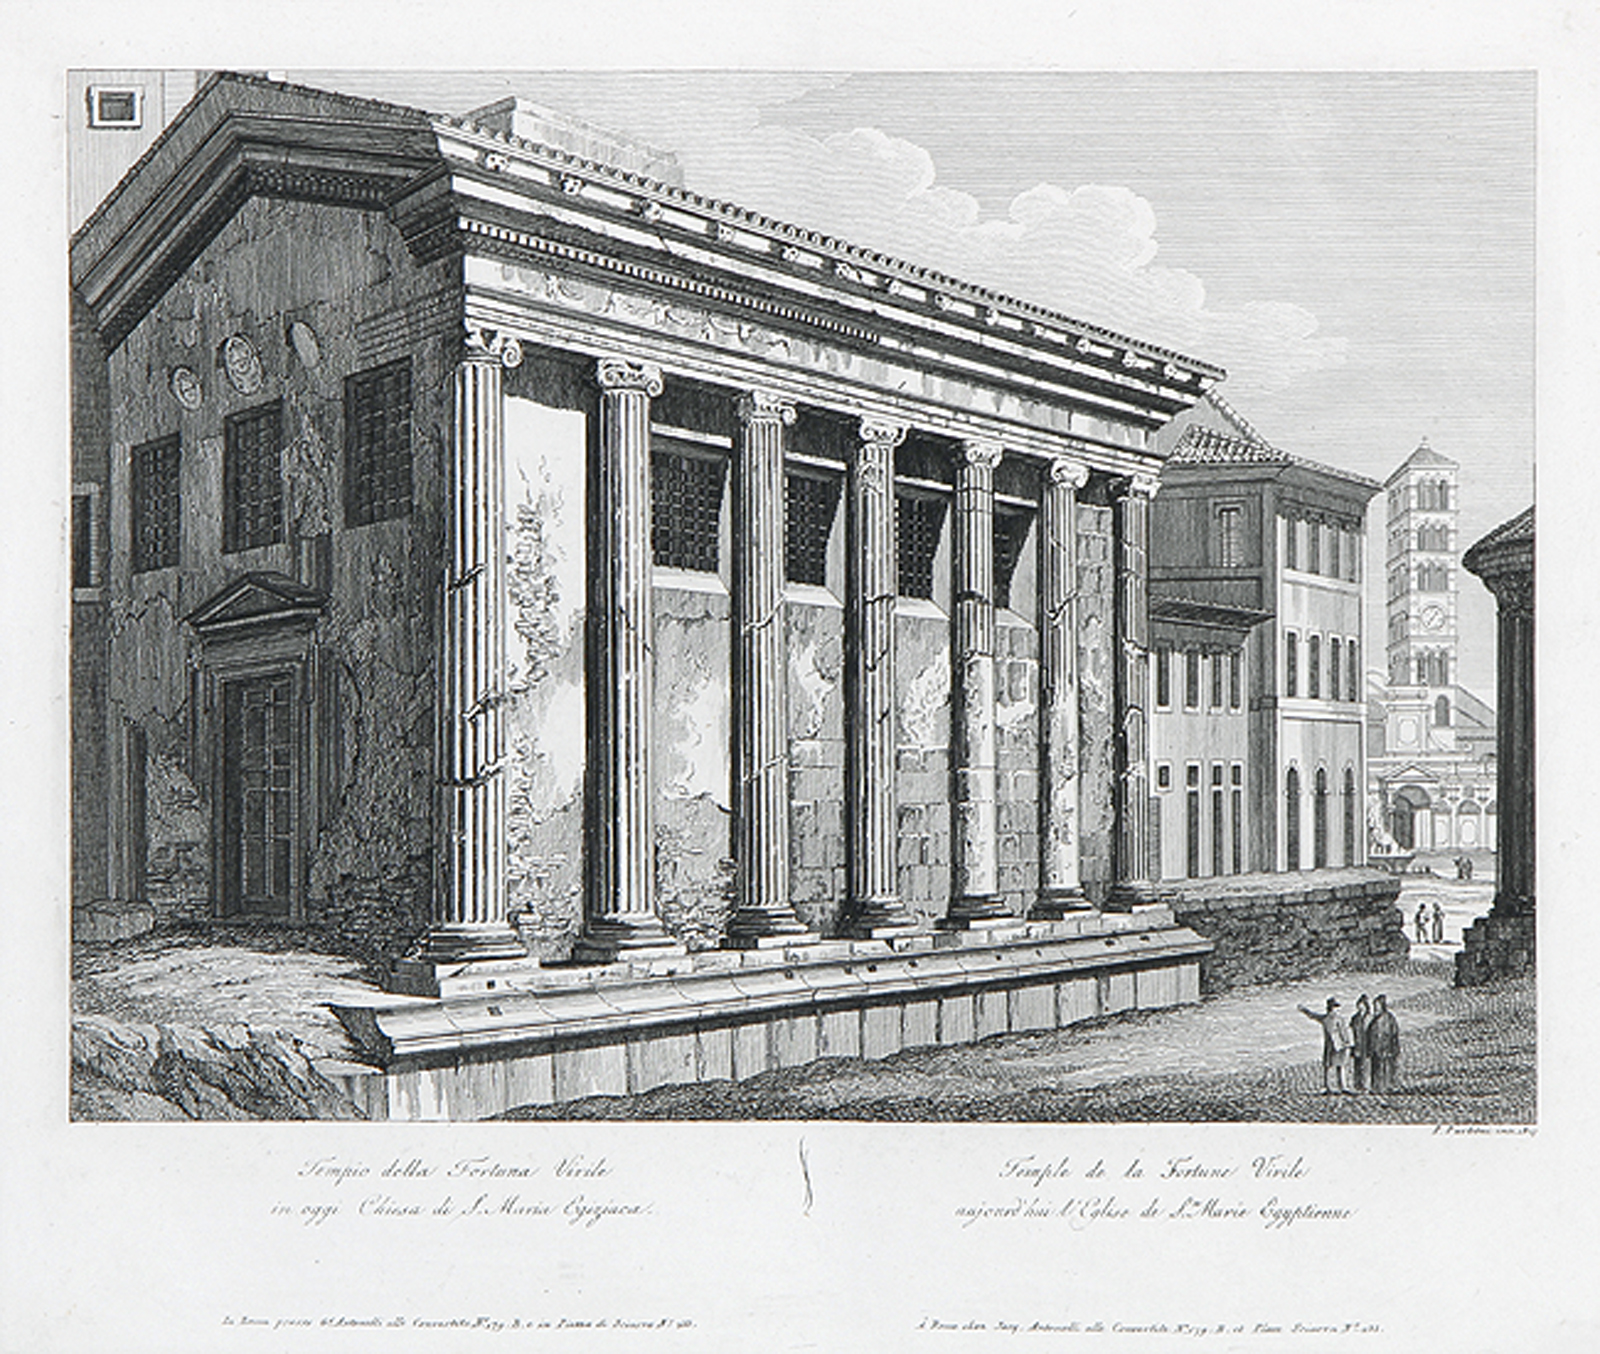 Ansichten von Denkmälern in Rom (9) und Tivoli (1)